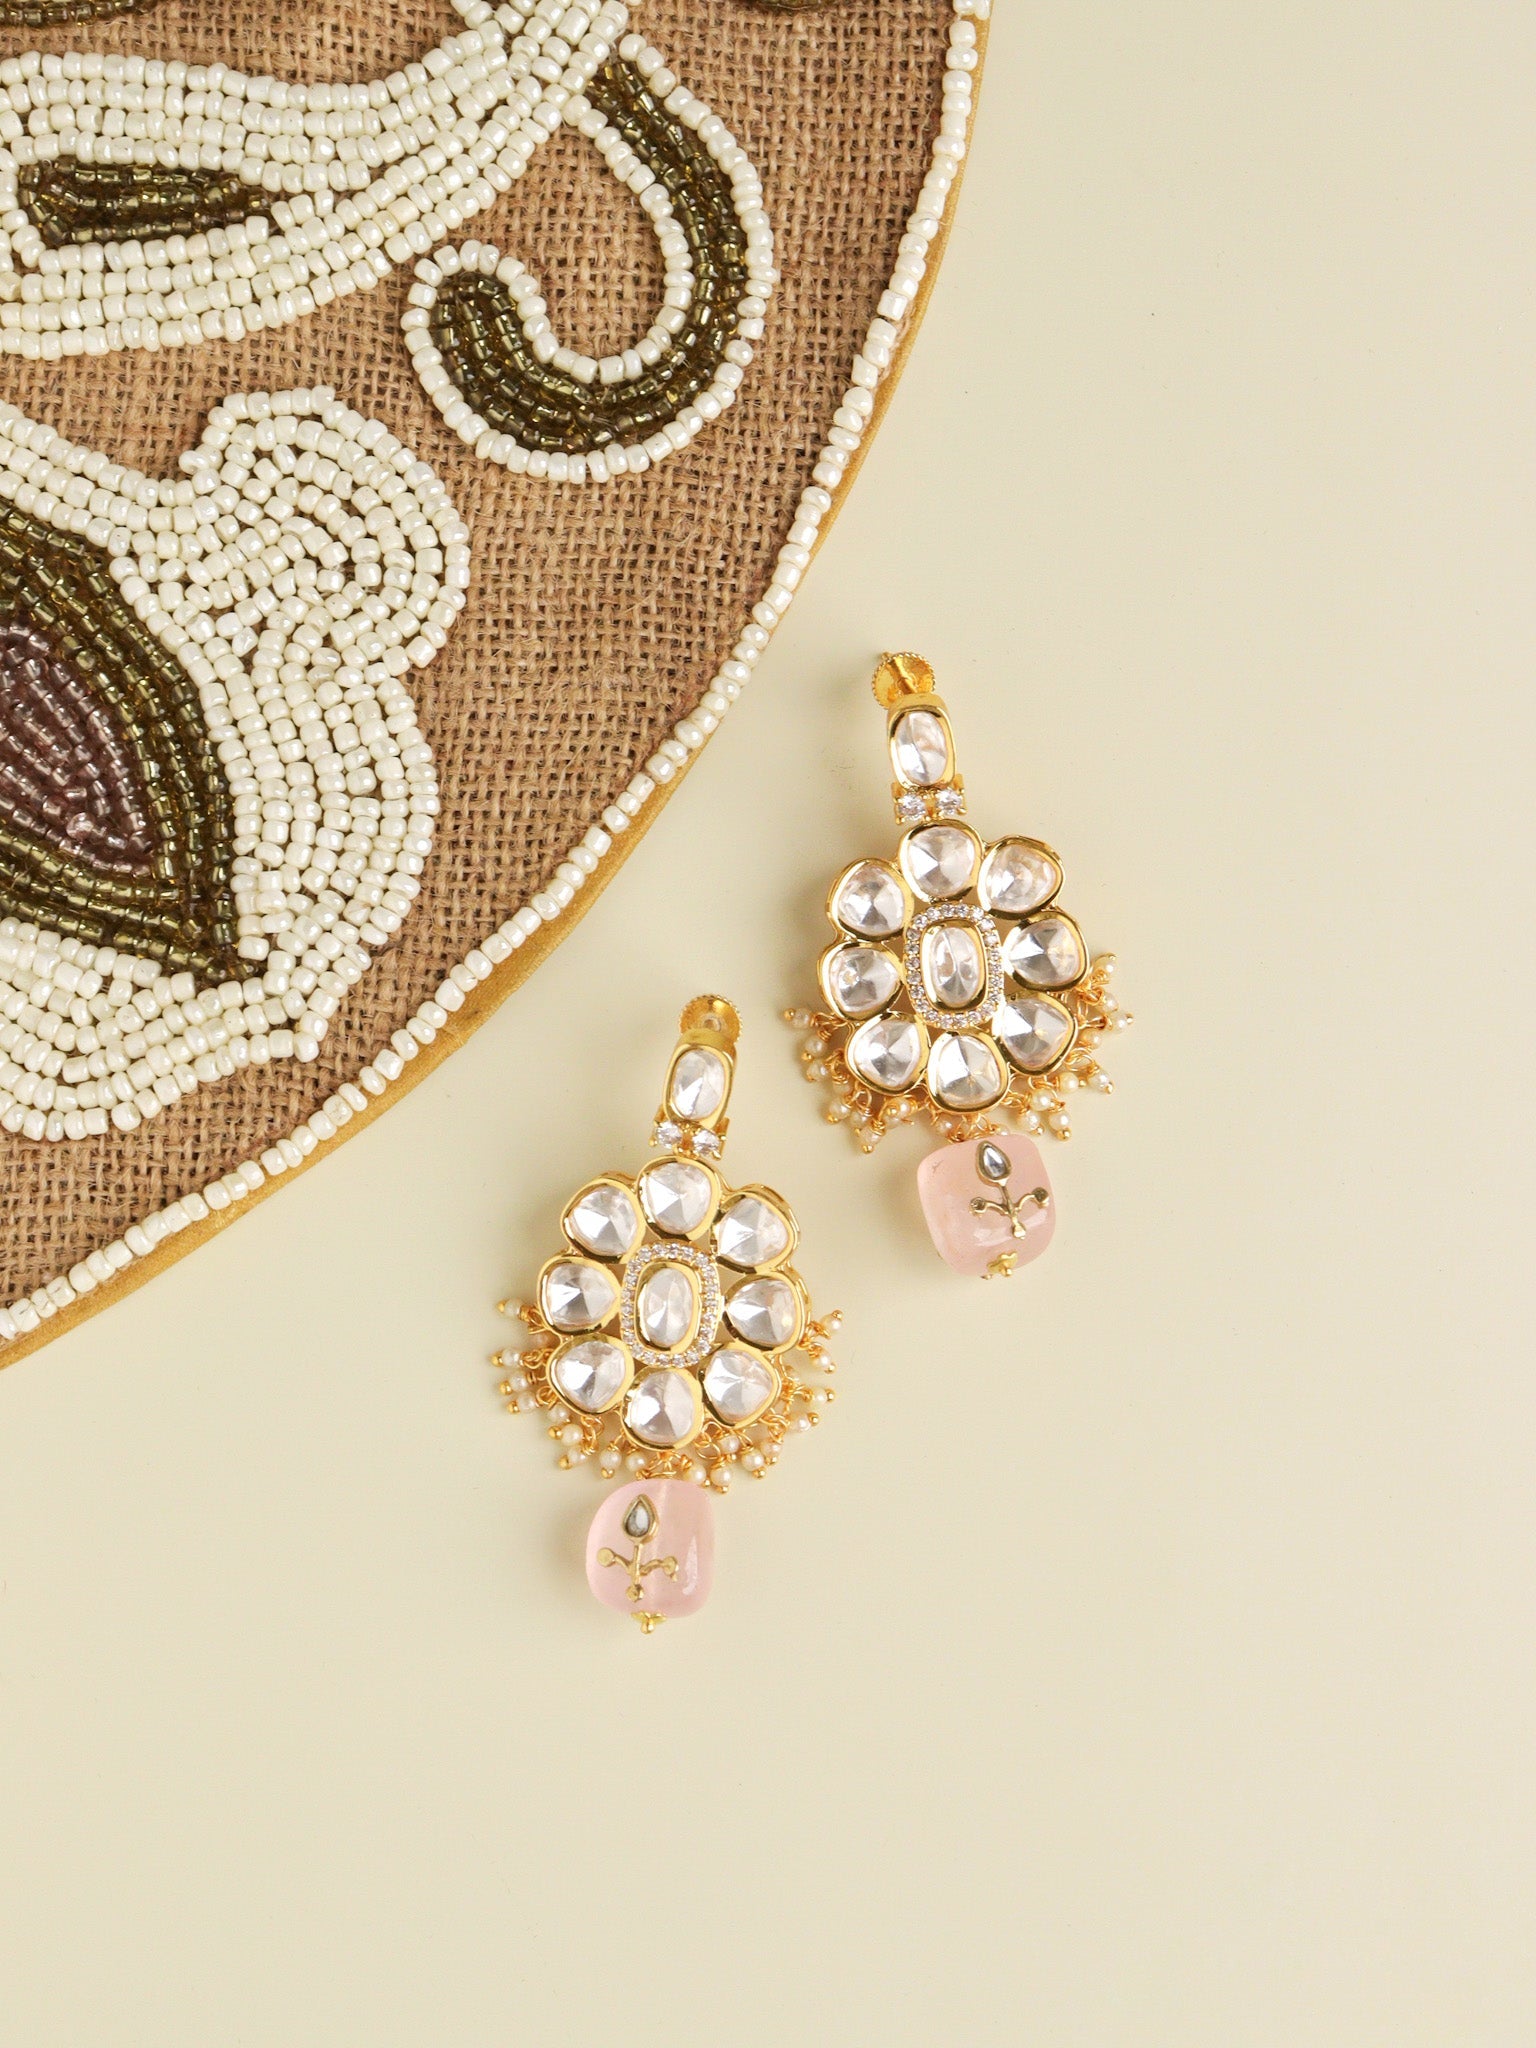  The Zoya Floral Drop Dangler Earrings